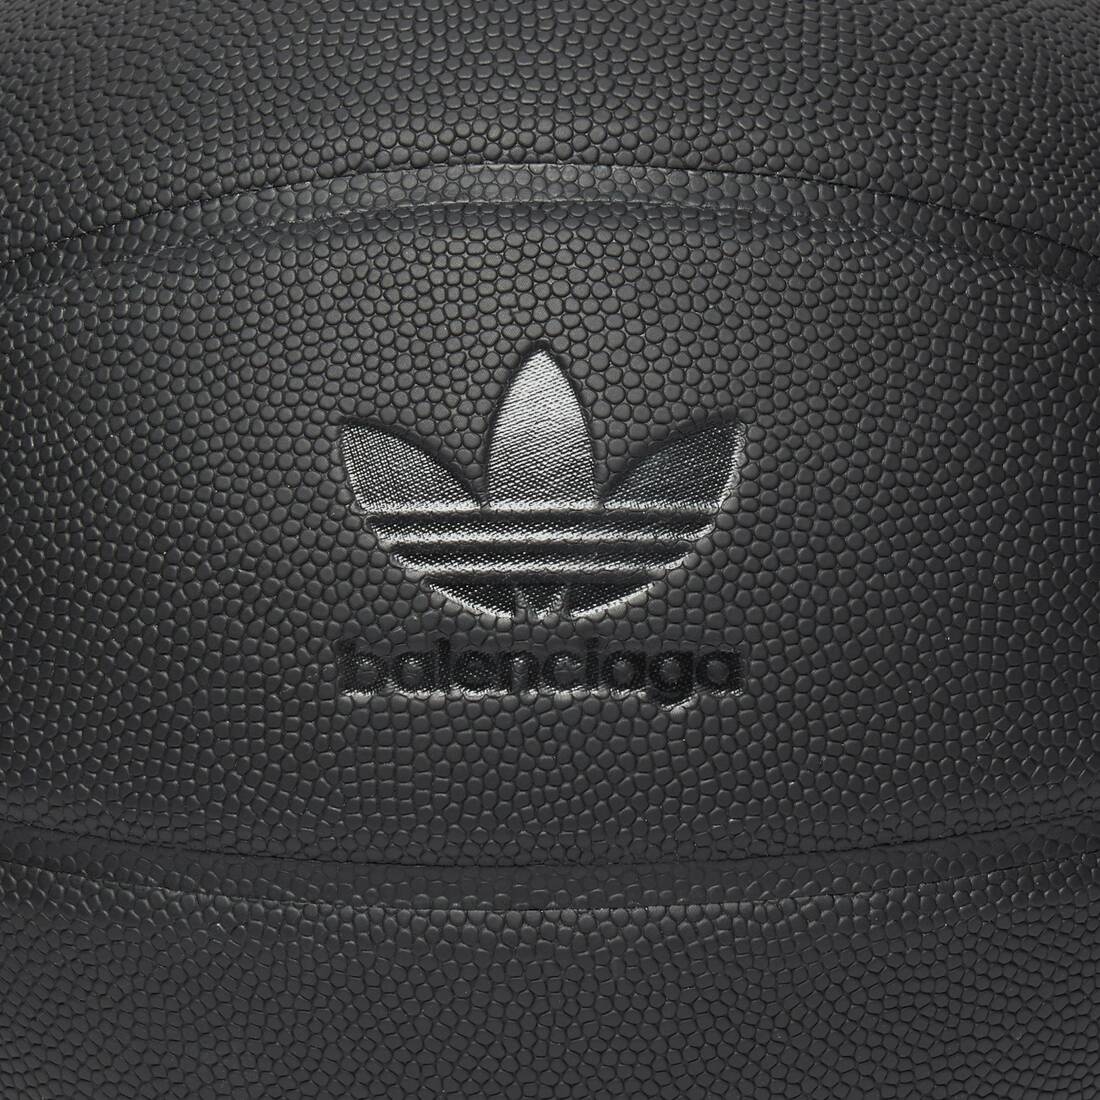 Balenciaga / Adidas Basketball in Black - 3